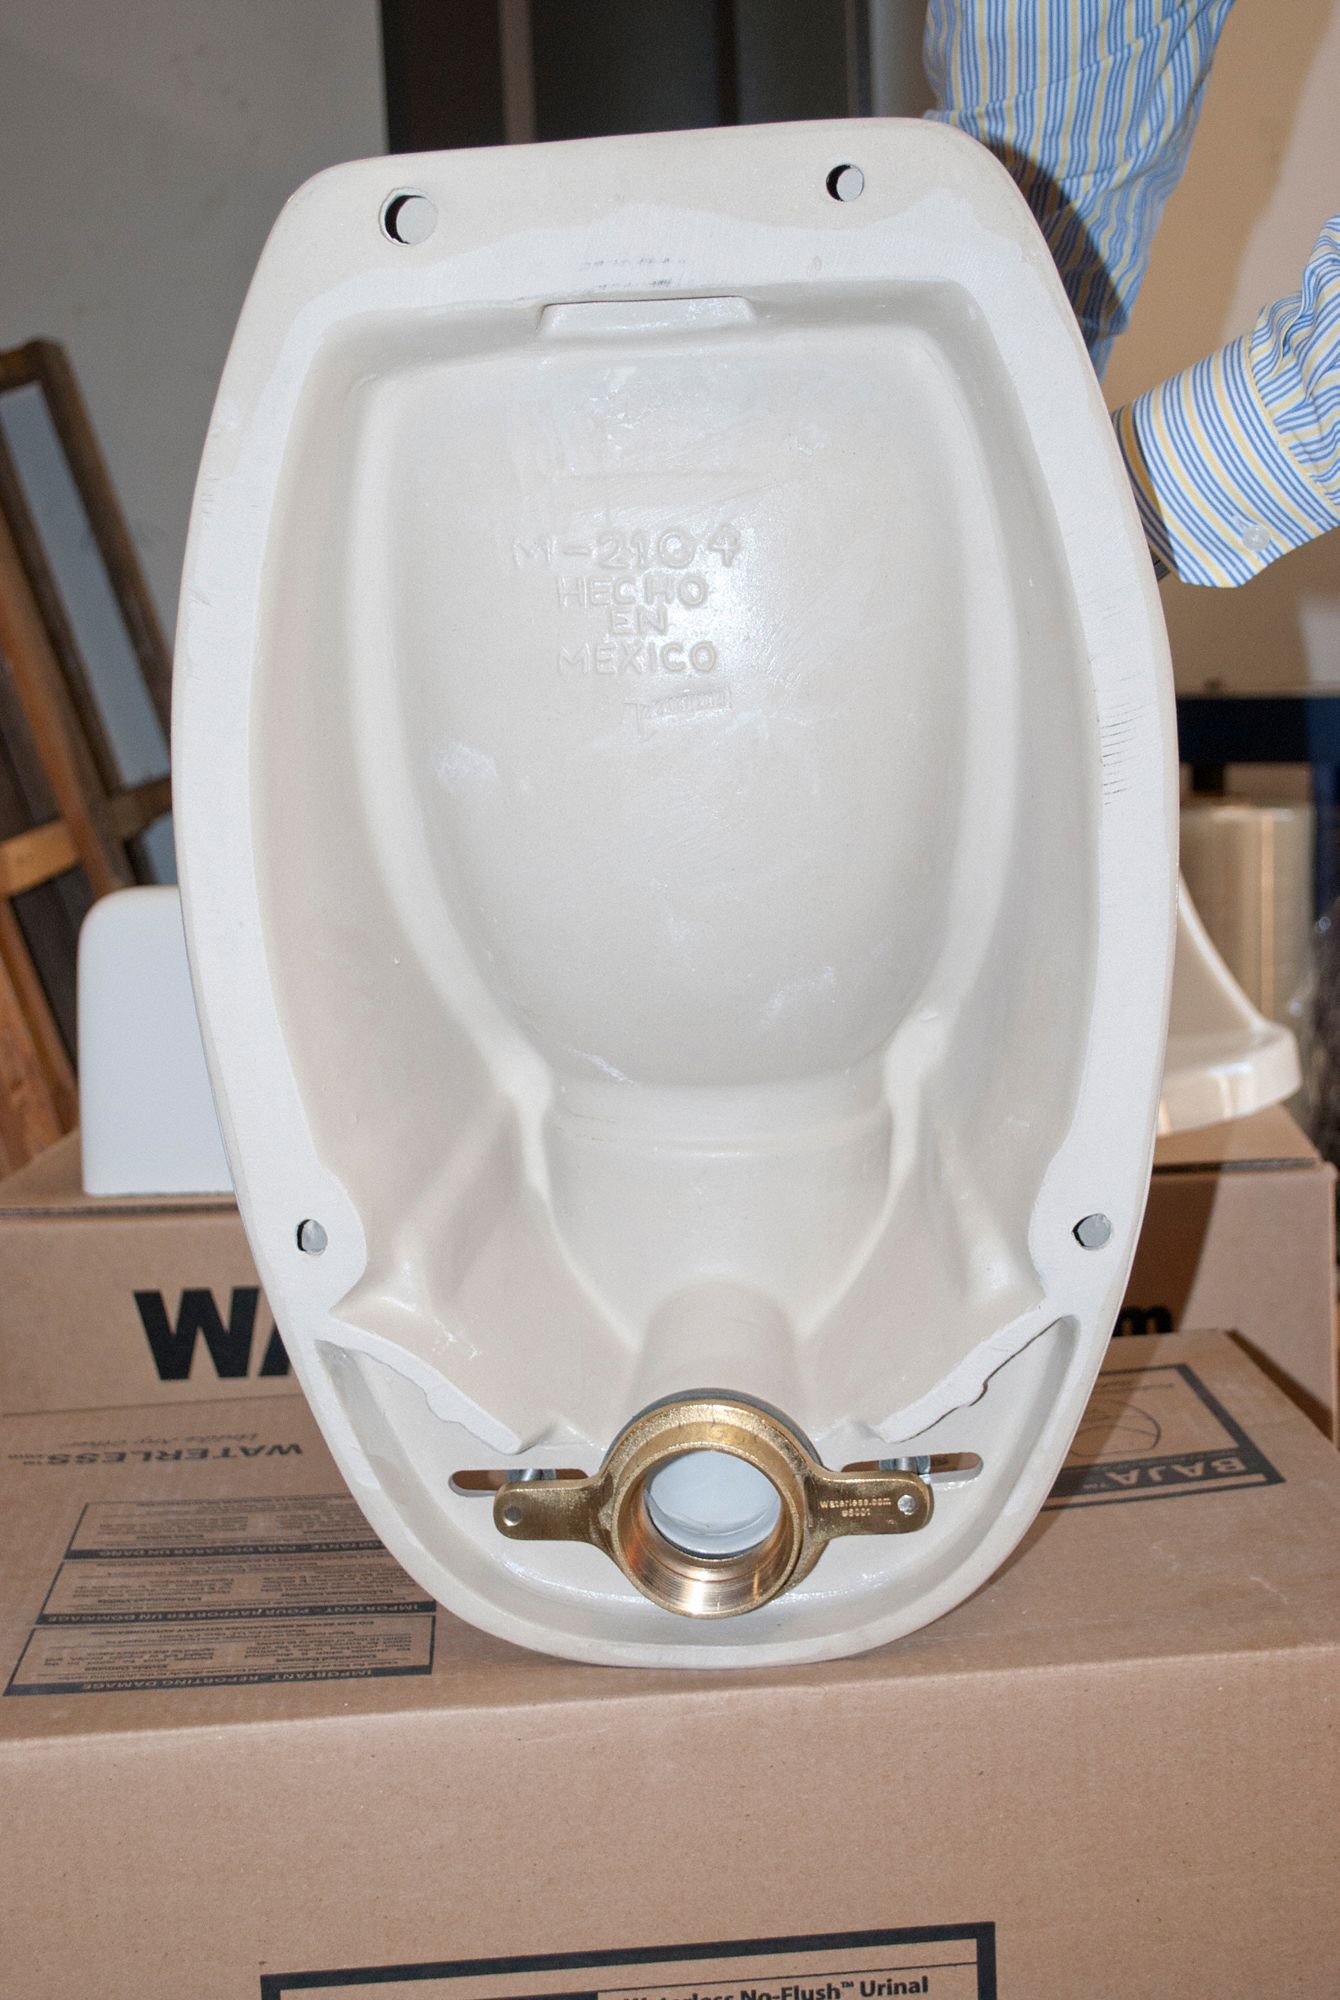 WATERLESS NO-FLUSH URINAL 2104 Waterless Urinal,Wall,Waterless 